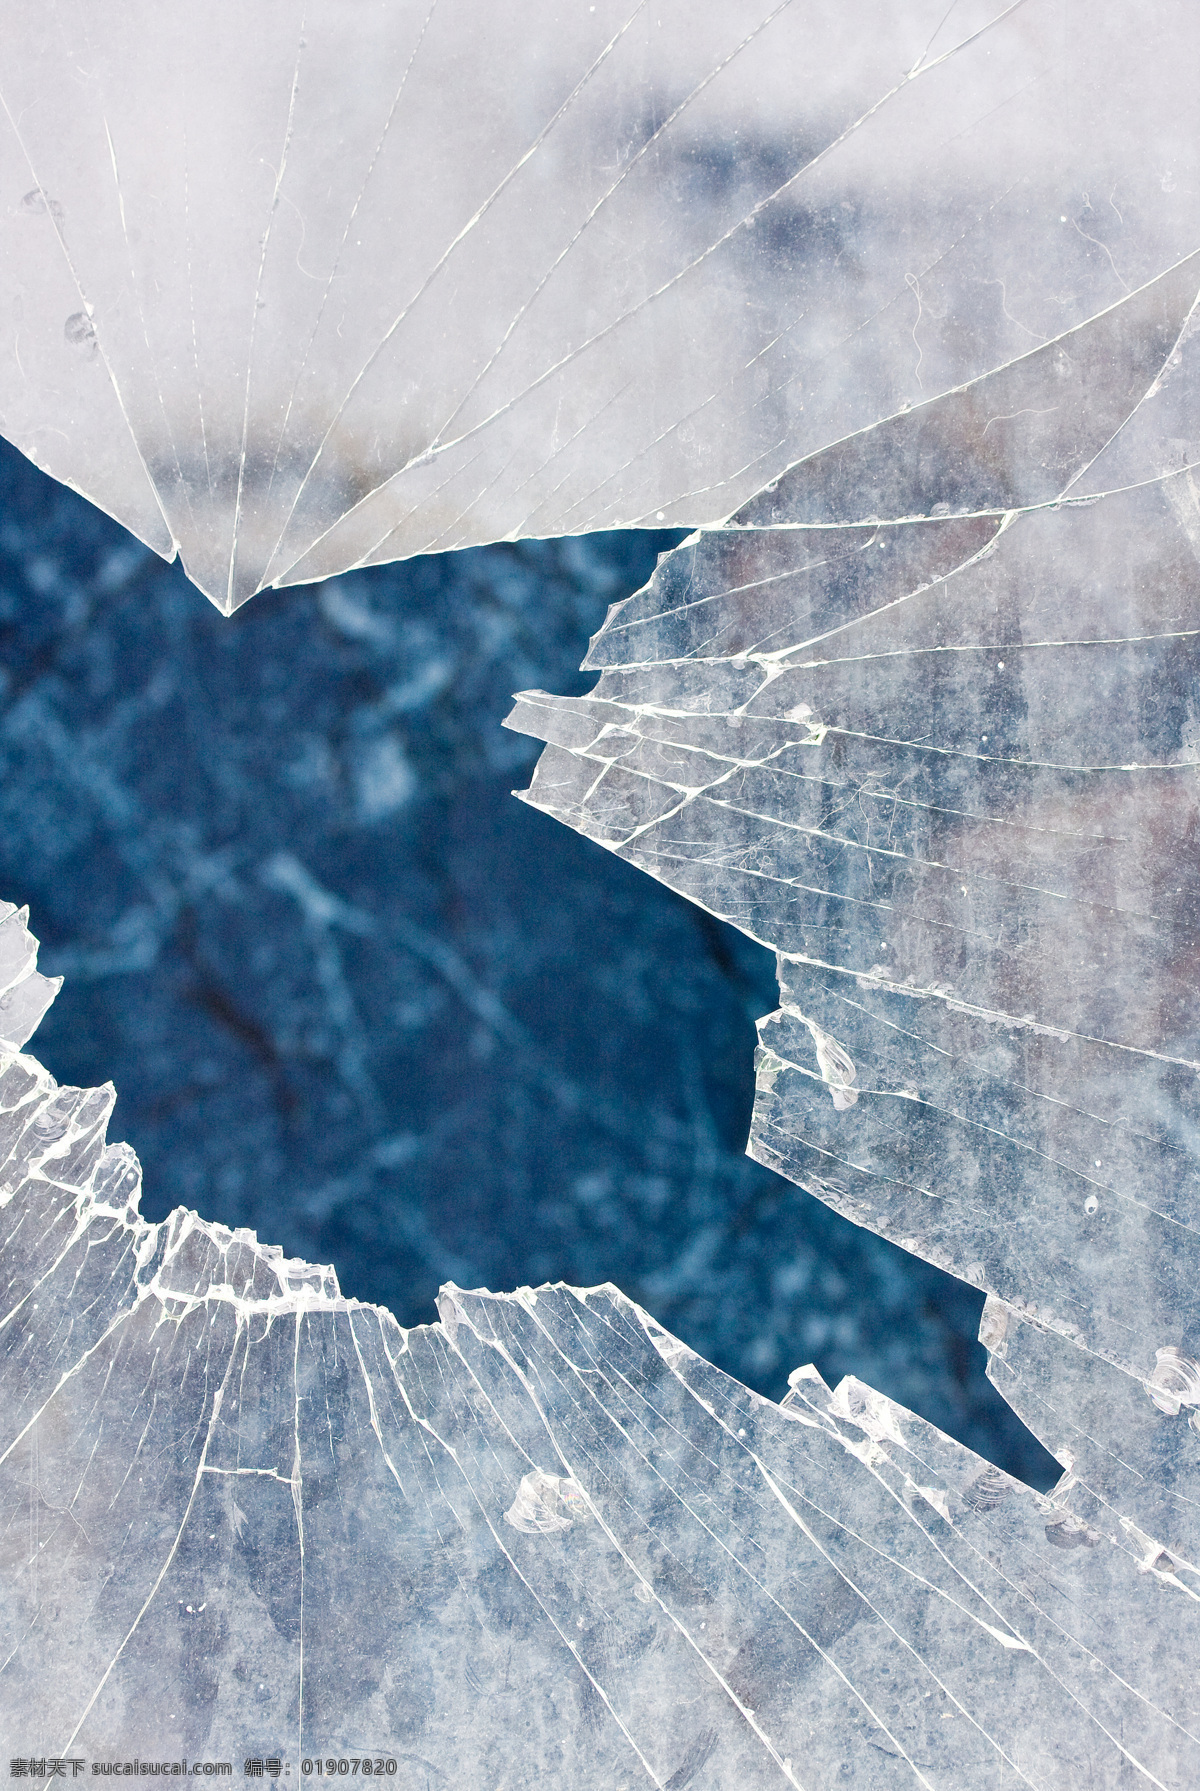 破烂 玻璃 玻璃弹孔 弹孔 纹理 碎玻璃 裂纹 玻璃系列 生活百科 破烂的玻璃 其他类别